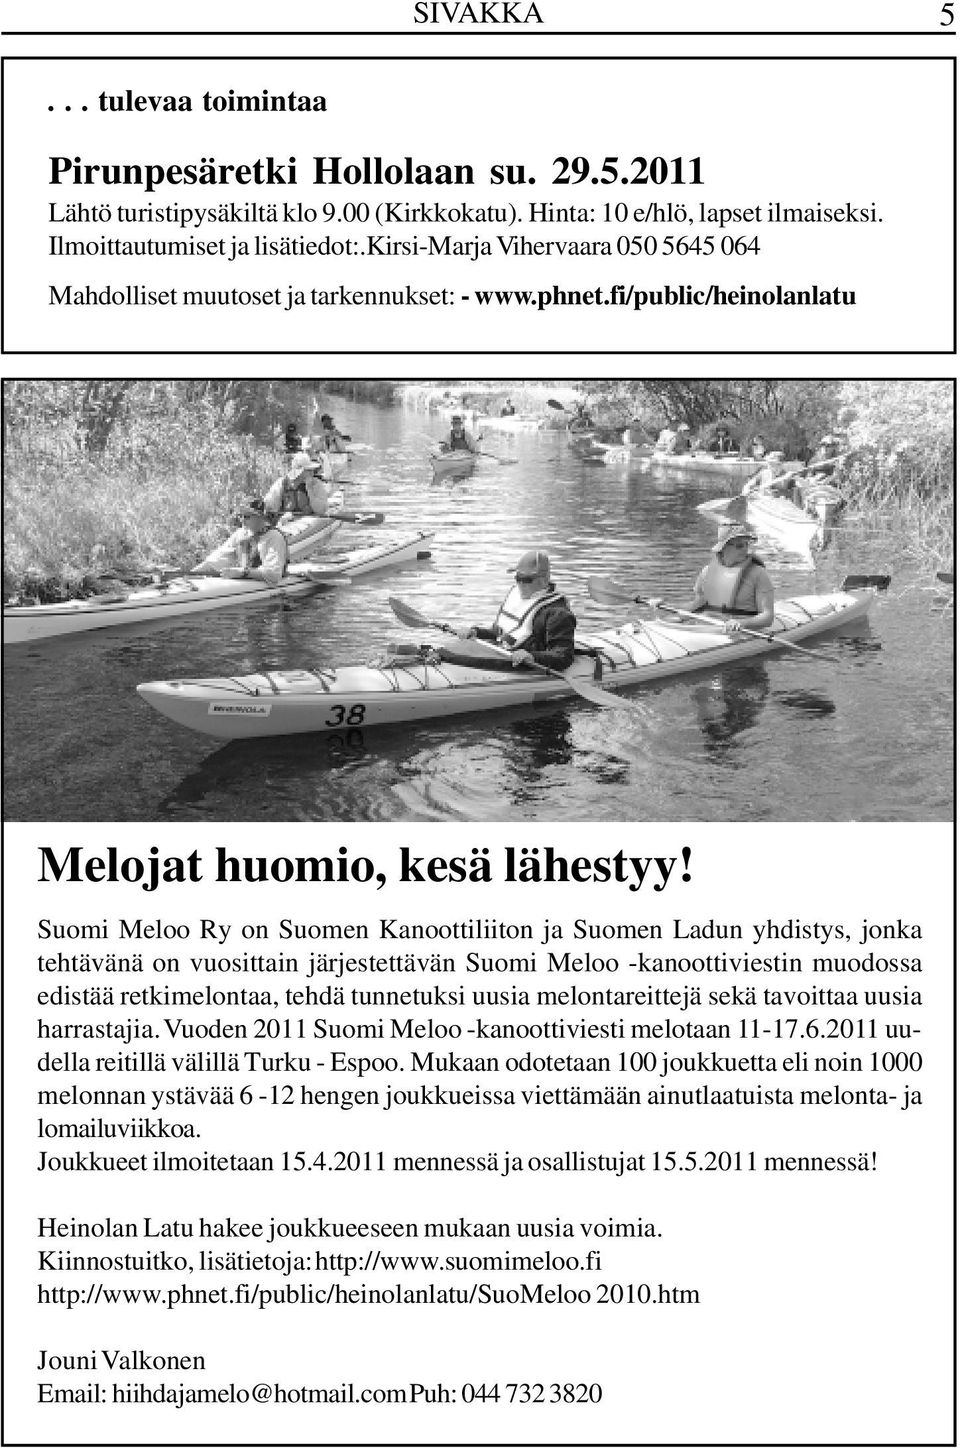 Suomi Meloo Ry on Suomen Kanoottiliiton ja Suomen Ladun yhdistys, jonka tehtävänä on vuosittain järjestettävän Suomi Meloo -kanoottiviestin muodossa edistää retkimelontaa, tehdä tunnetuksi uusia